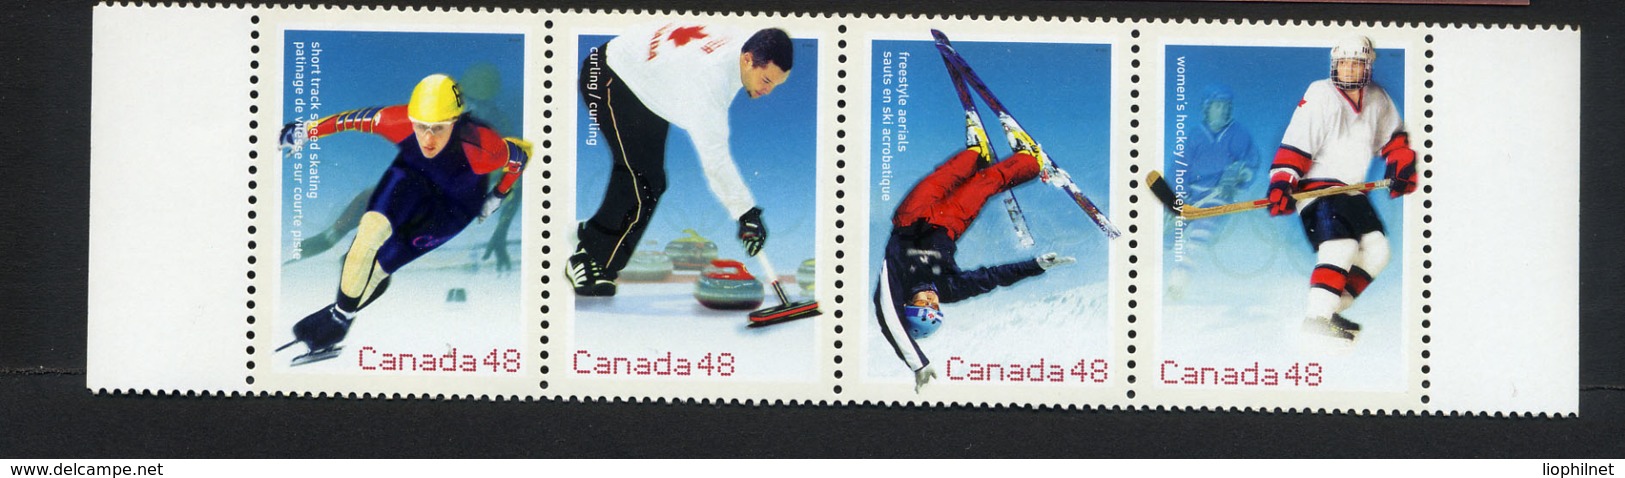 CANADA 2002, Patinage De Vitesse, Curling, Hockey, Ski Acrobatique, 4 Valeurs, Neufs / Mint. R1528 - Hiver 2002: Salt Lake City